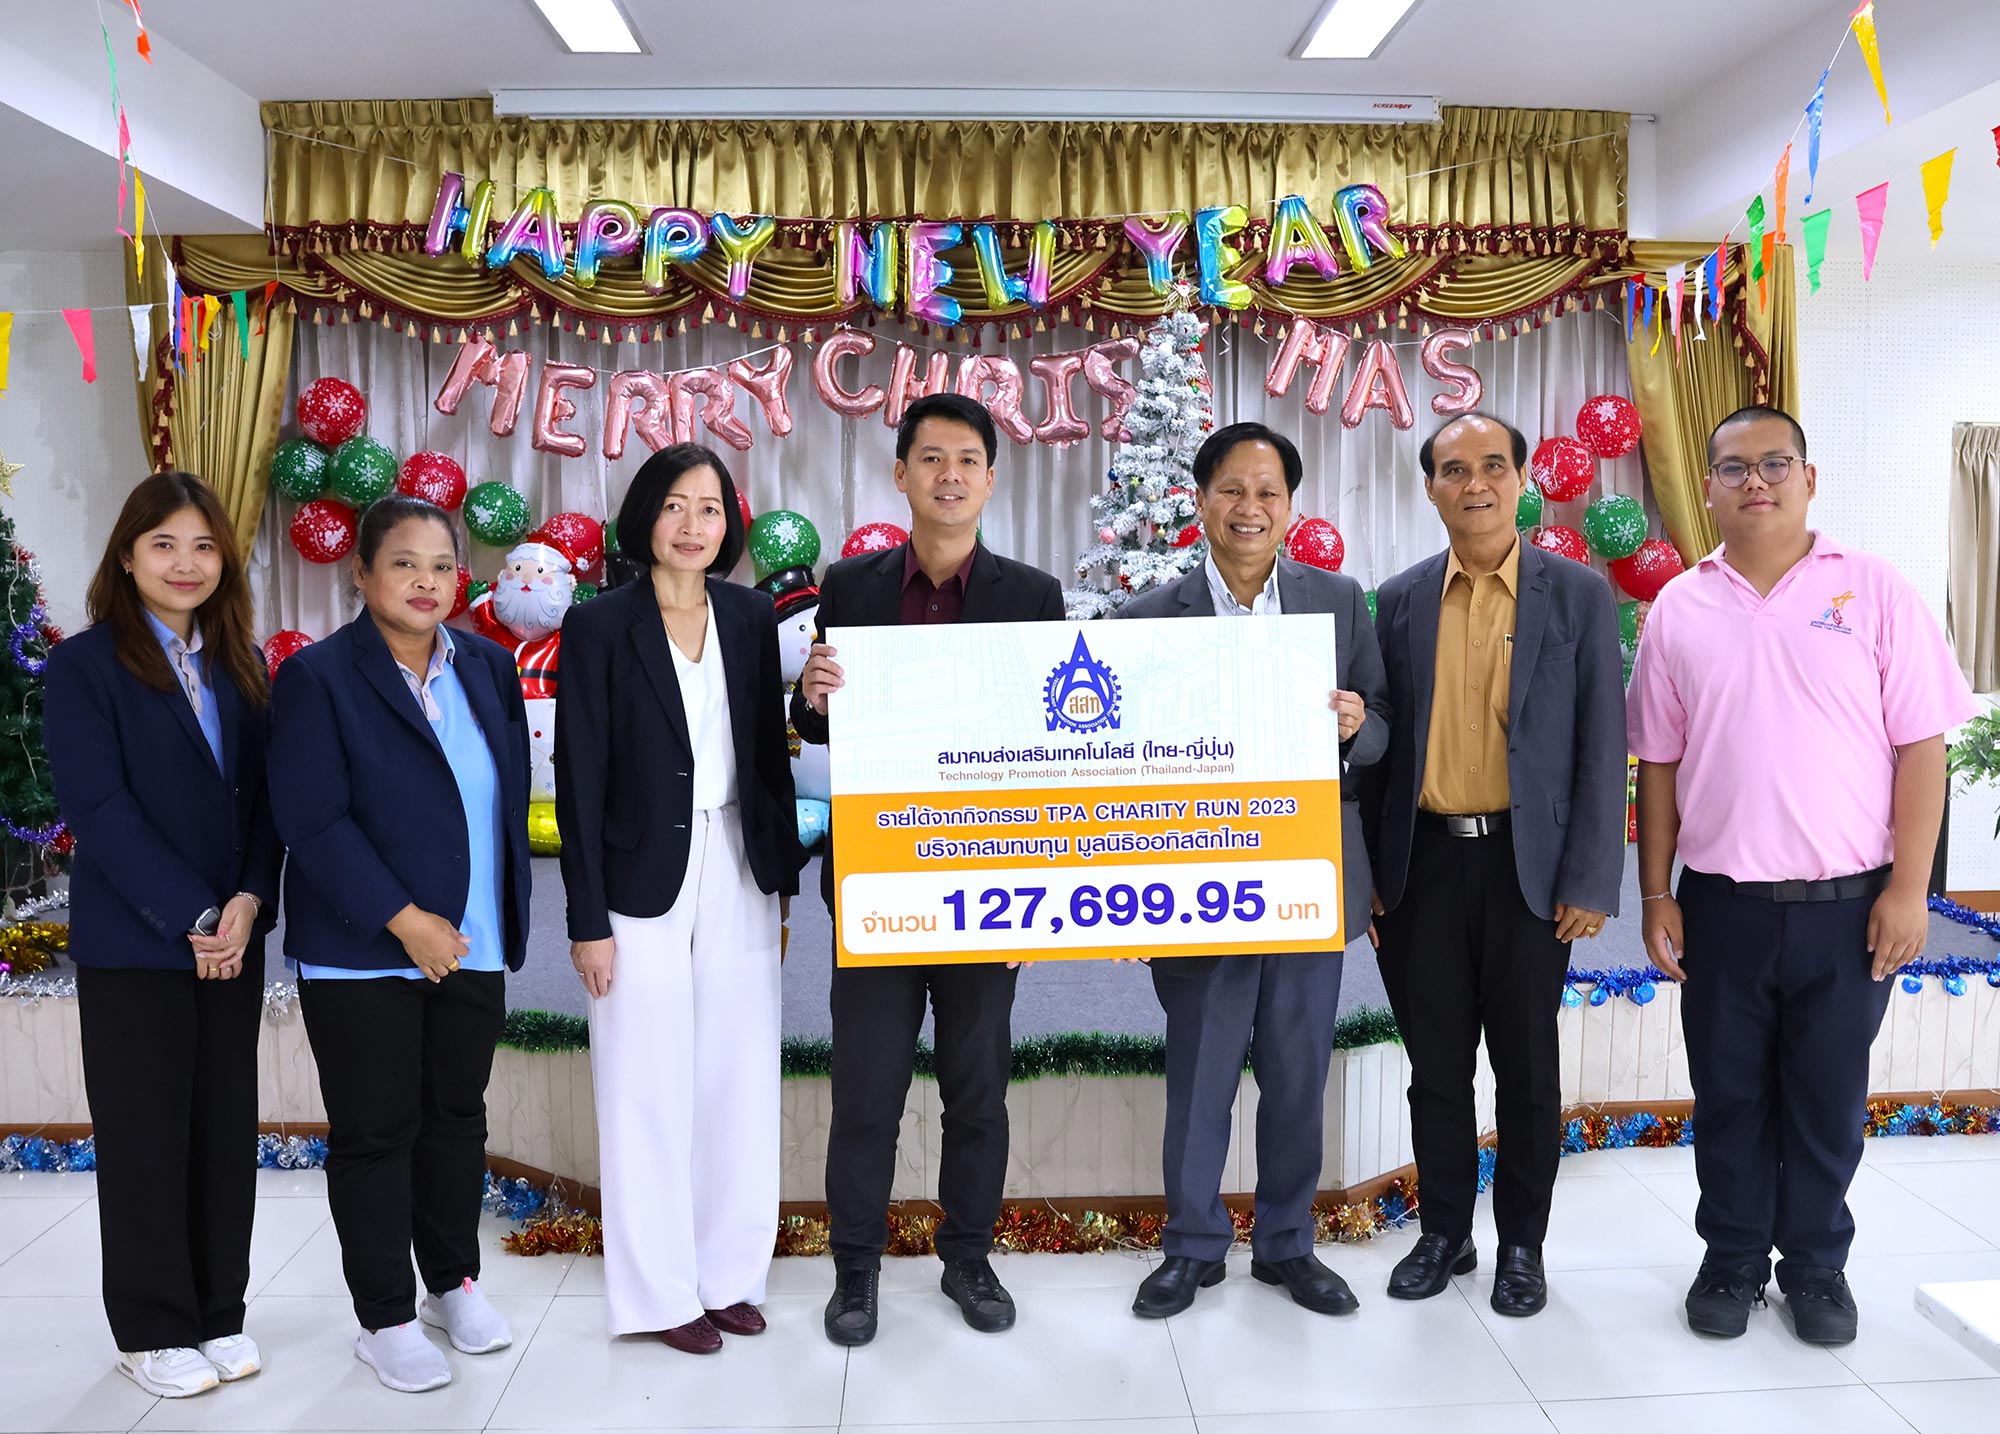 ส.ส.ท. นำรายได้หลังหักค่าใช้จ่าย ทั้งหมดจากการจัดกิจกรรม TPA Charity Run 2023 มอบให้ มูลนิธิออทิสติกไทย: Autistic Thai Foundation  